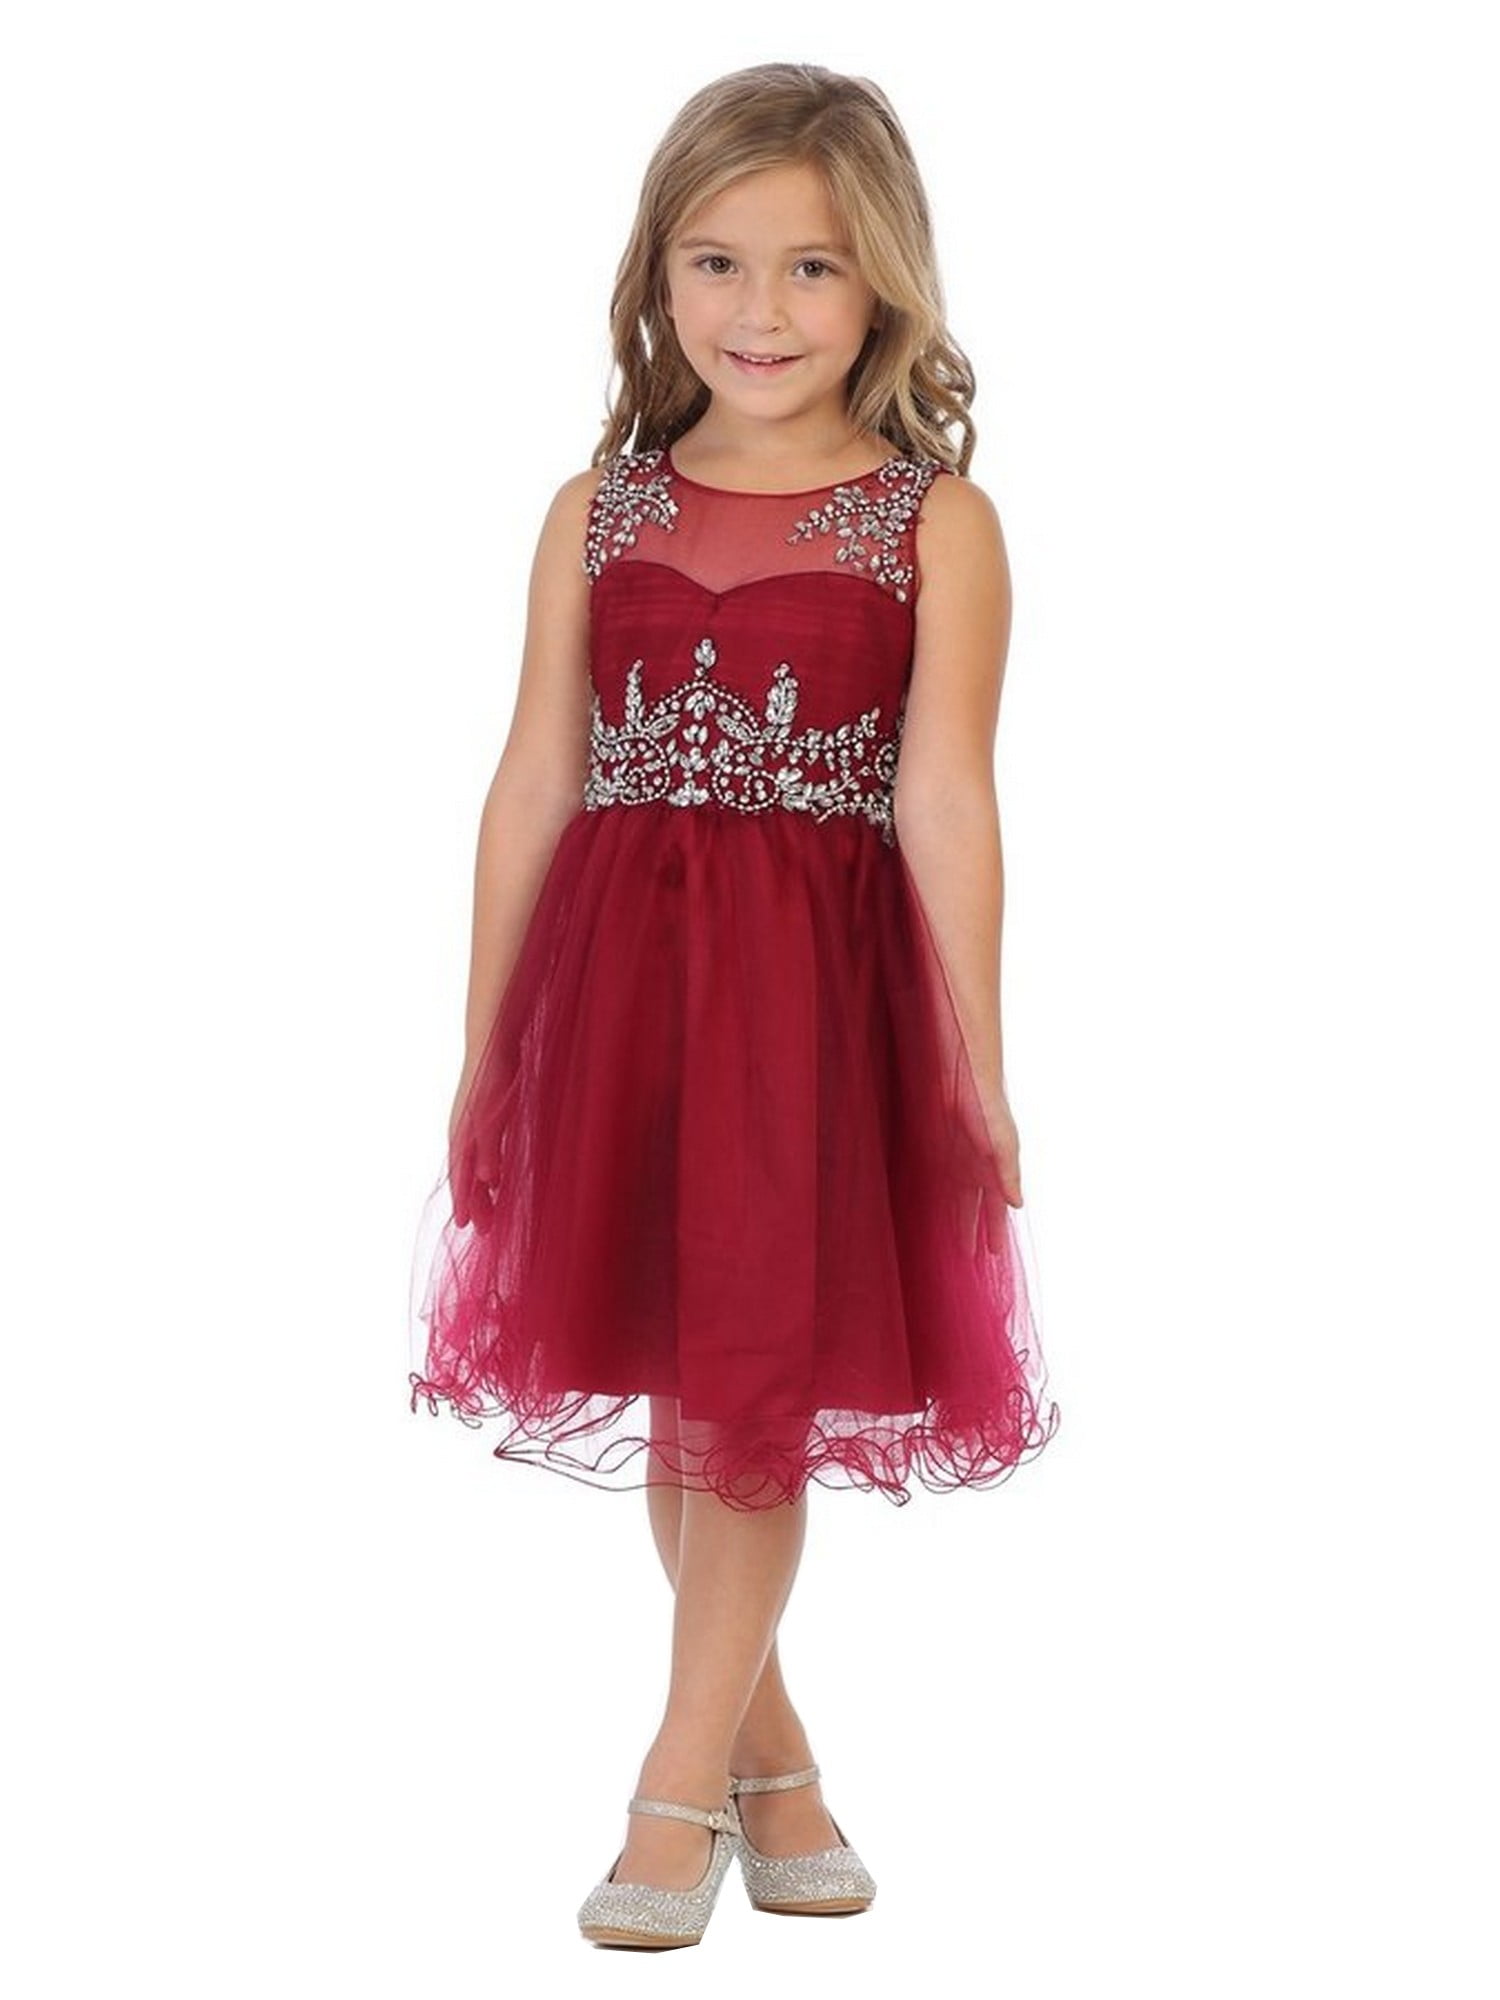 burgundy little girl dress